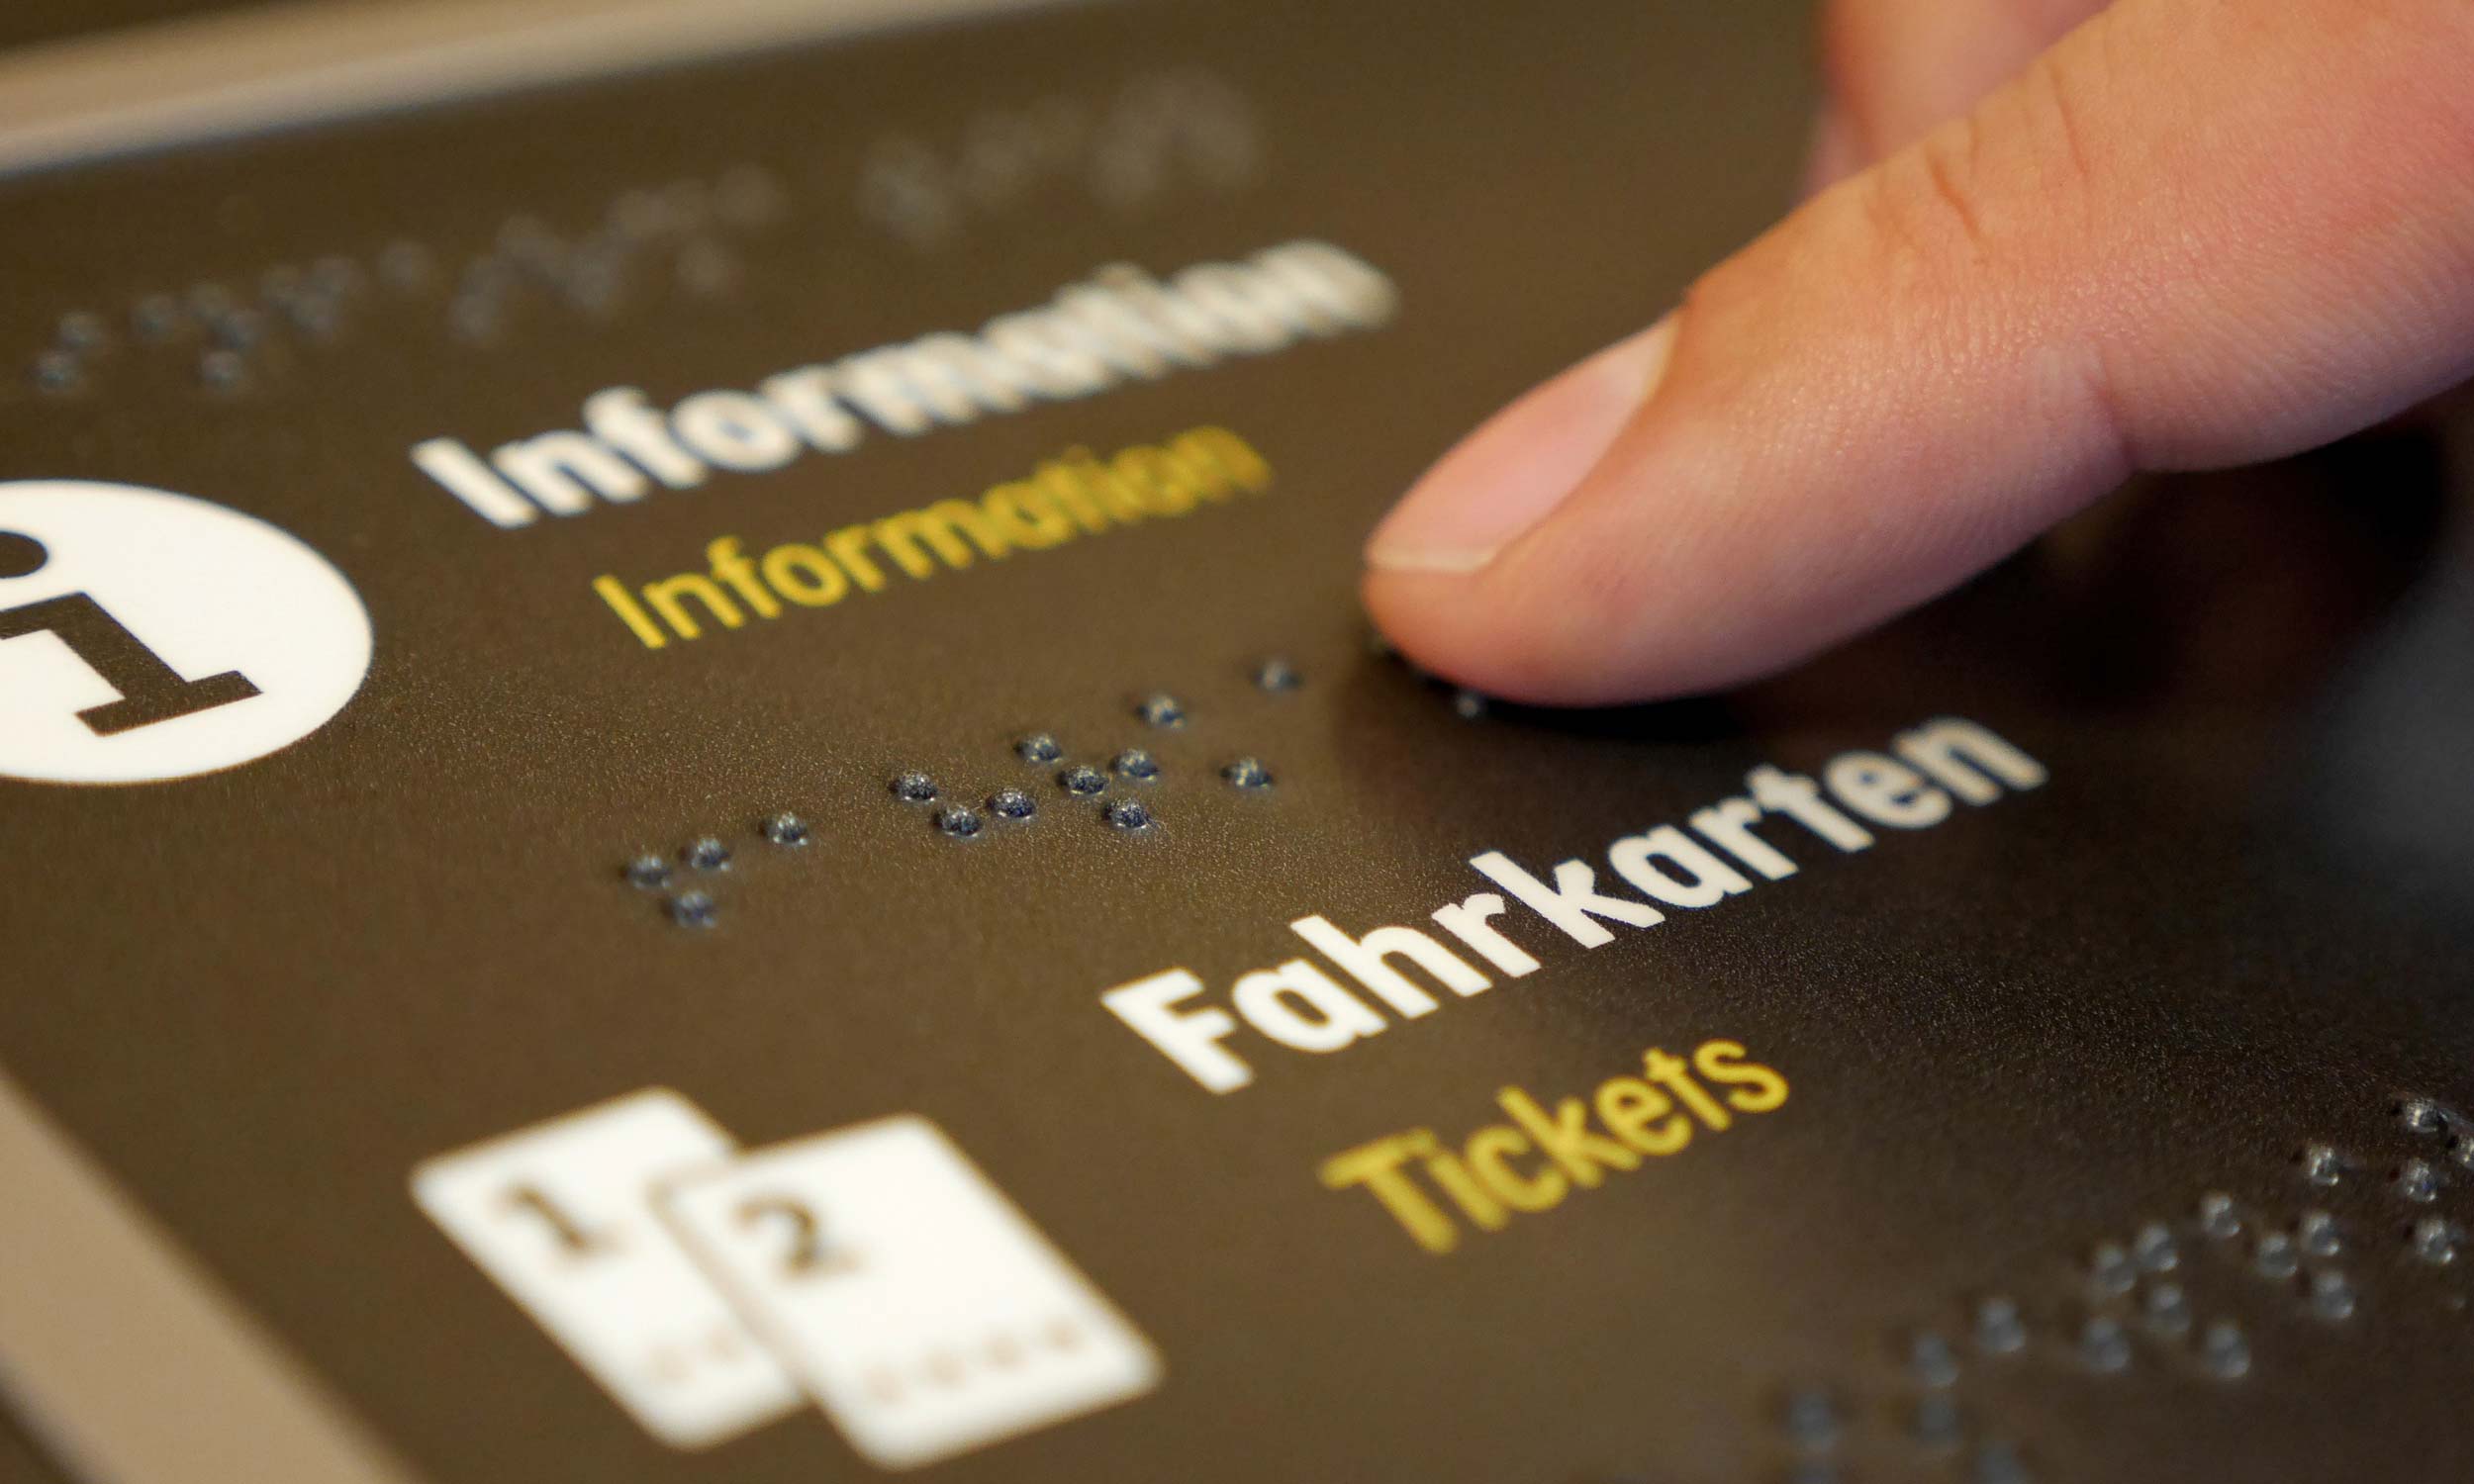 Detailfoto eines horizontal angeordneten Informationsschildes mit Braille